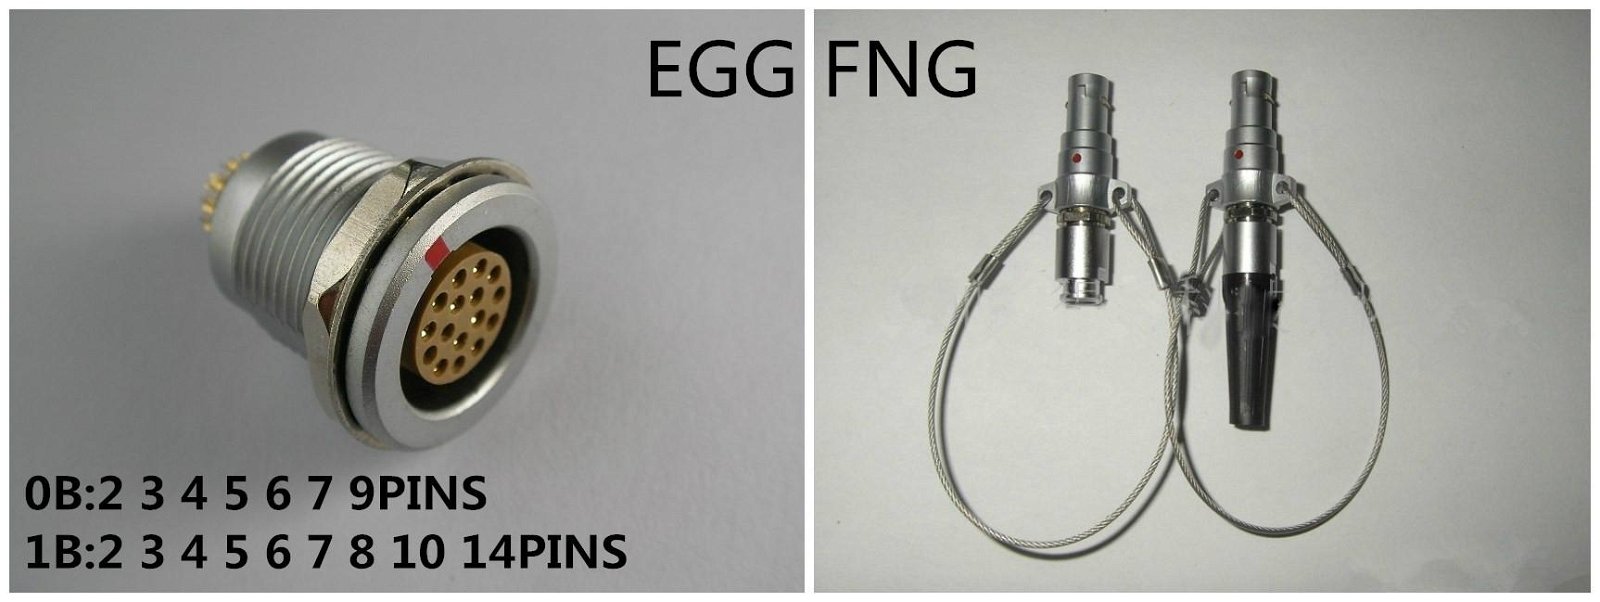 LEMO connector FNG EGG 0B 1B 2 3 4 5 6 7 8 10 14PINS connector metal plug 